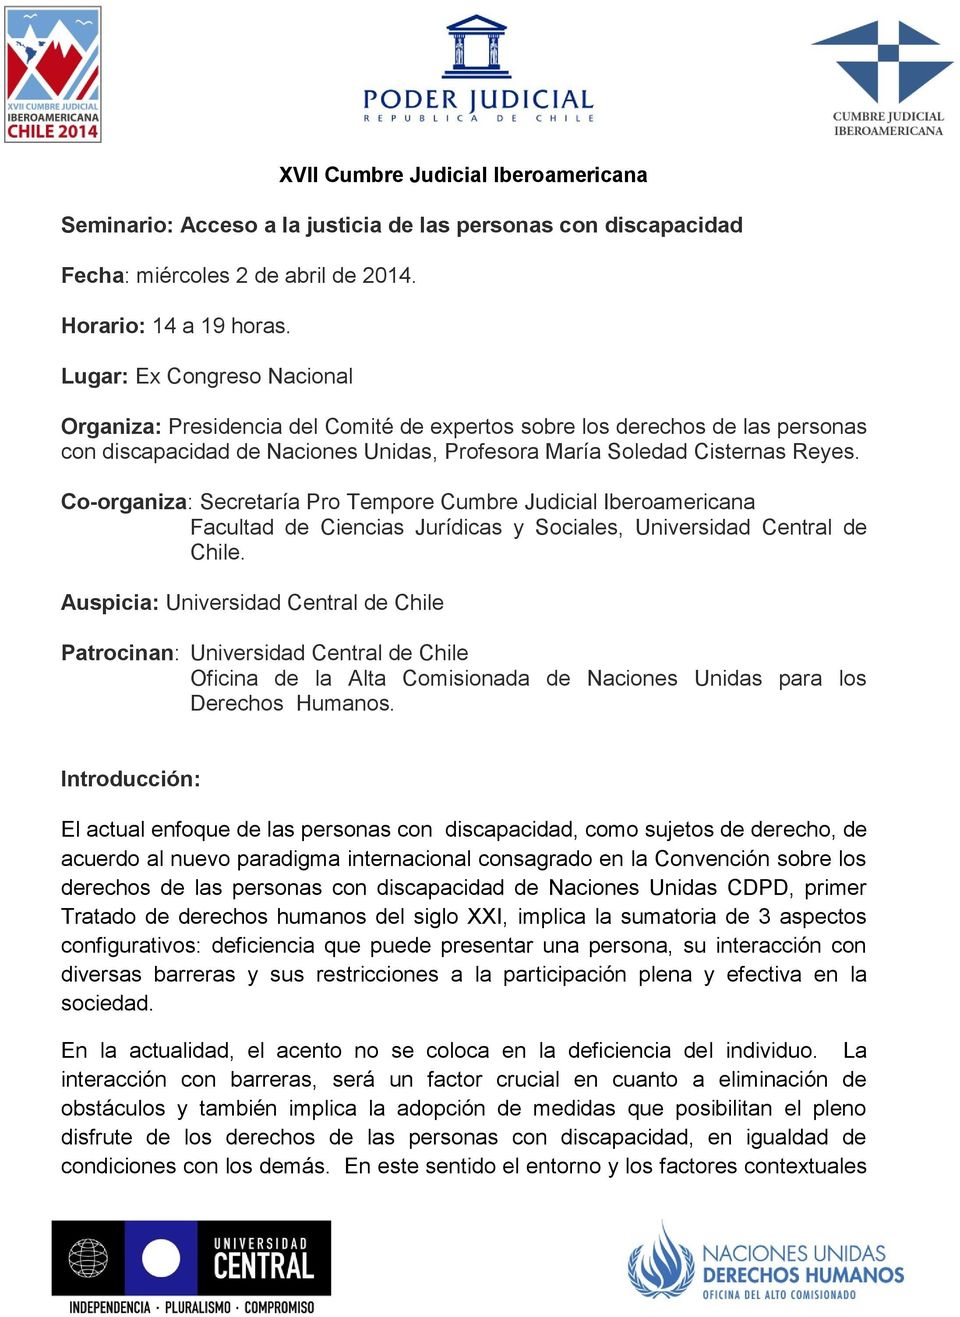 Co-organiza: Secretaría Pro Tempore Cumbre Judicial Iberoamericana Facultad de Ciencias Jurídicas y Sociales, Universidad Central de Chile.